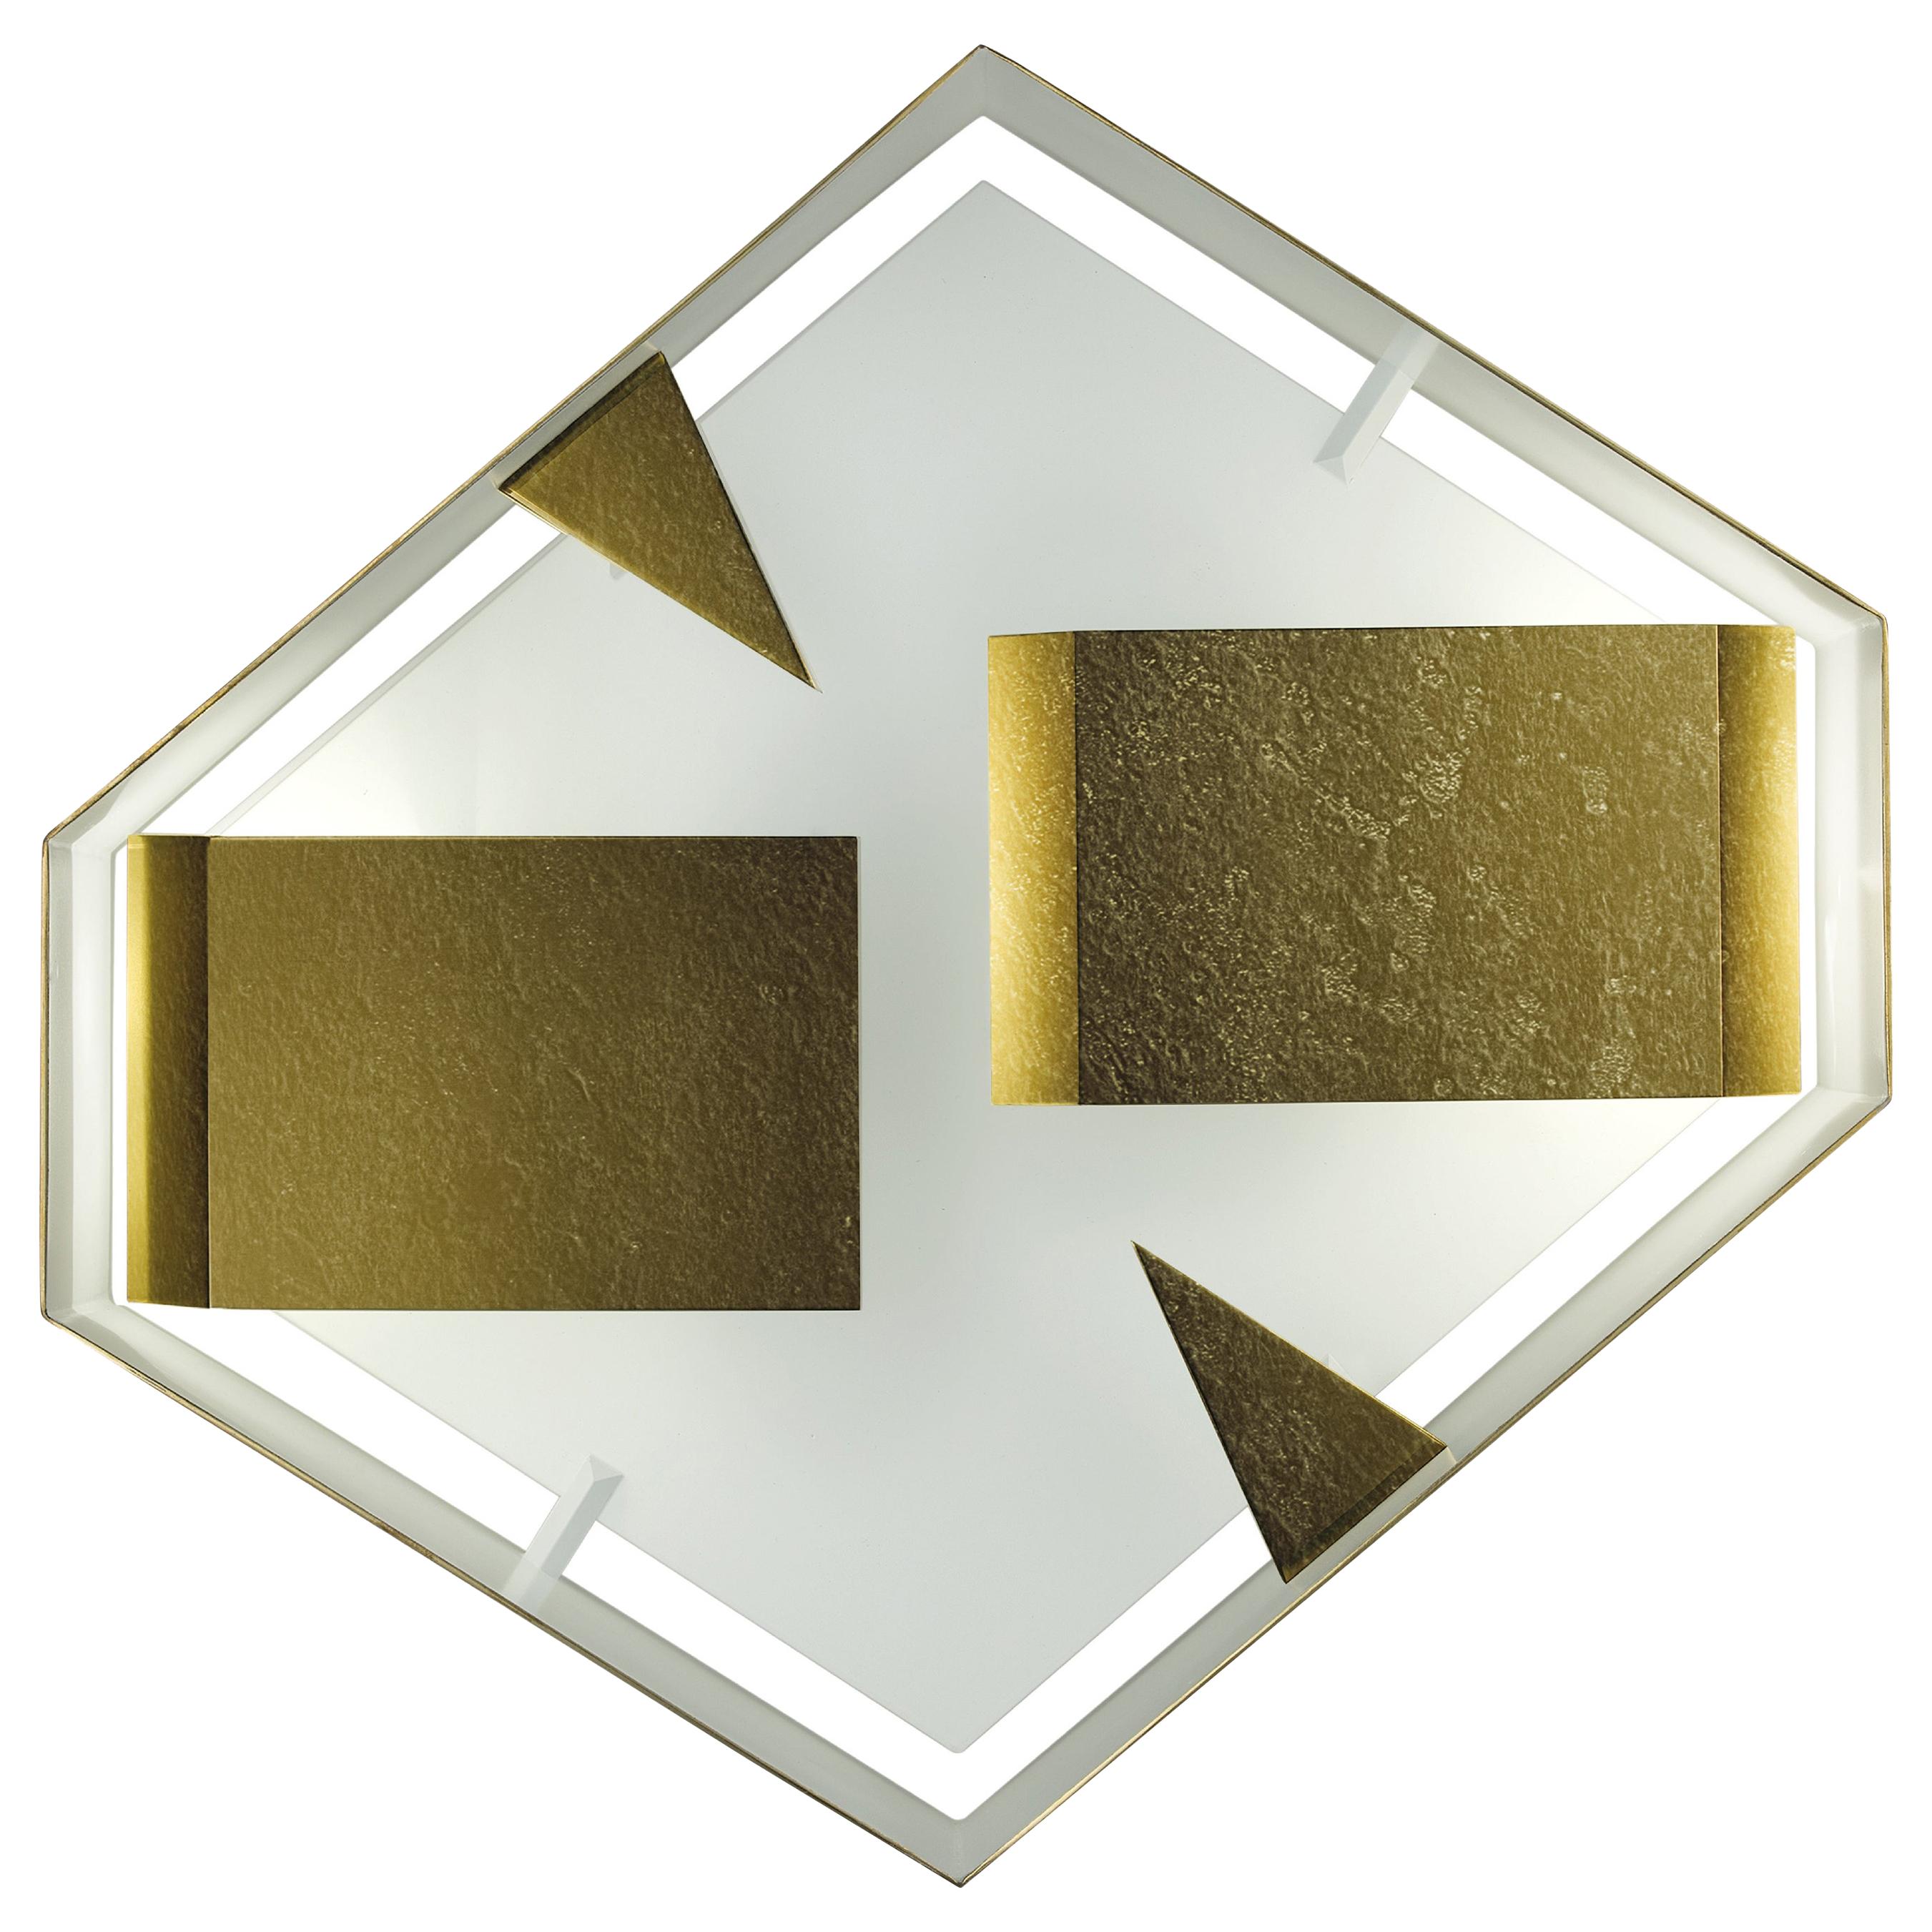 Gio Ponti Wandleuchter Raumteiler mit Leuchte, limitierte Auflage 2012 2017, Bronze Messing